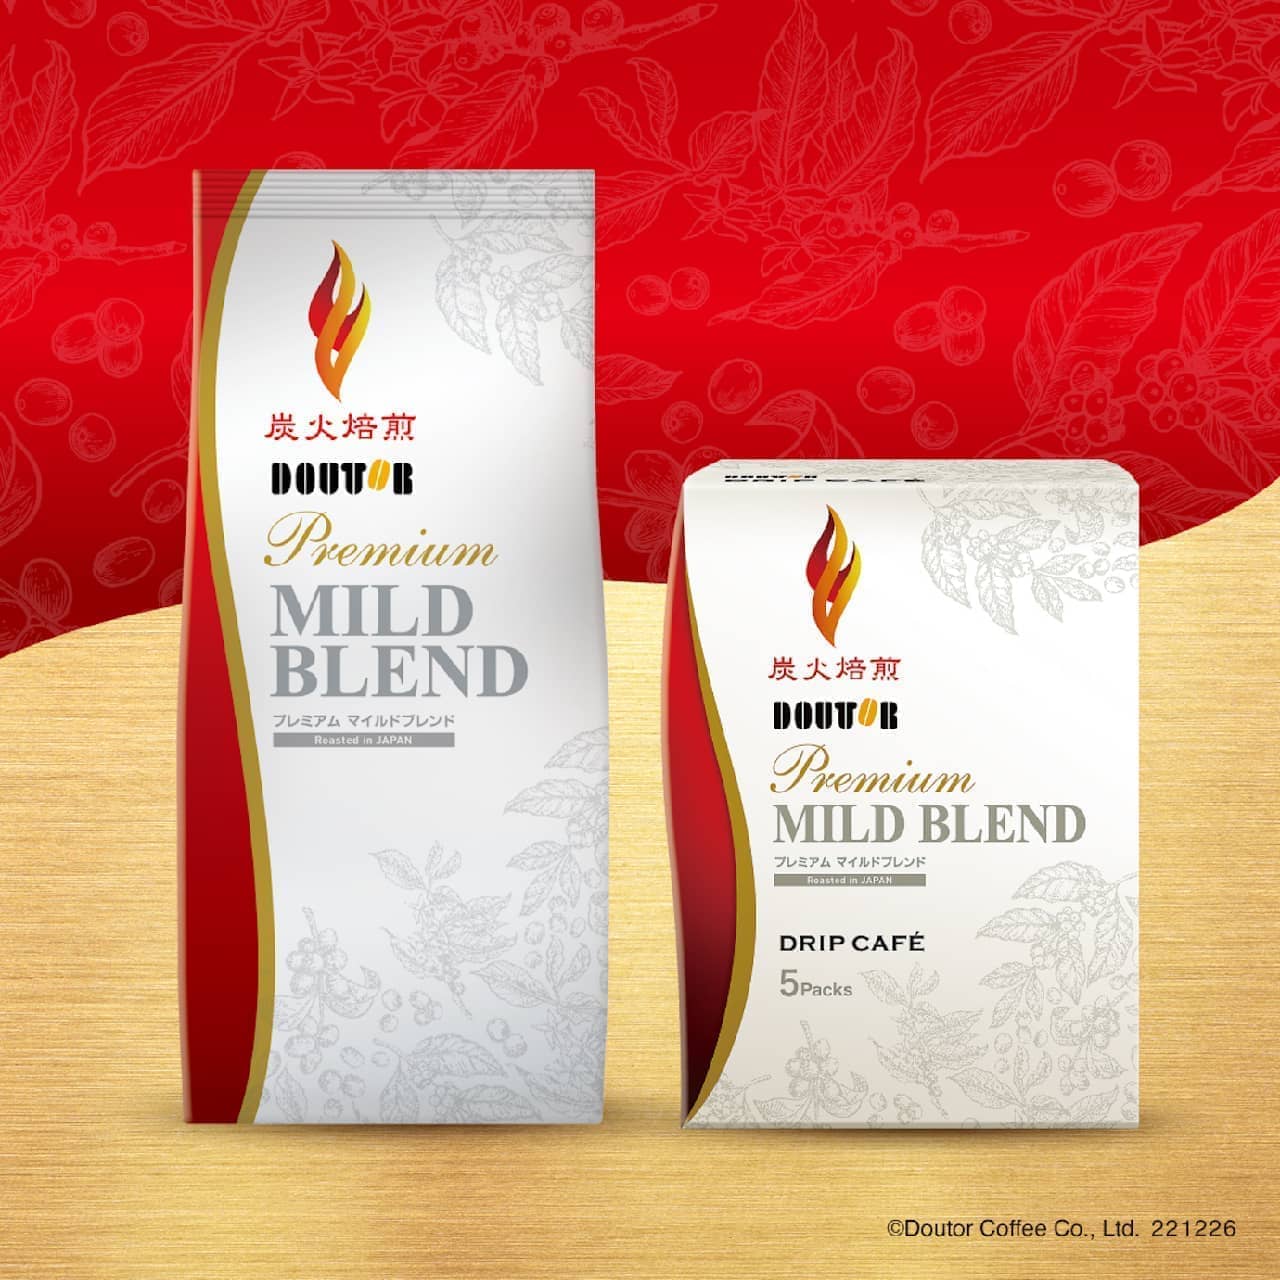 Doutor "Premium Mild Blend" "Financier Plain & Green Tea Yuzu